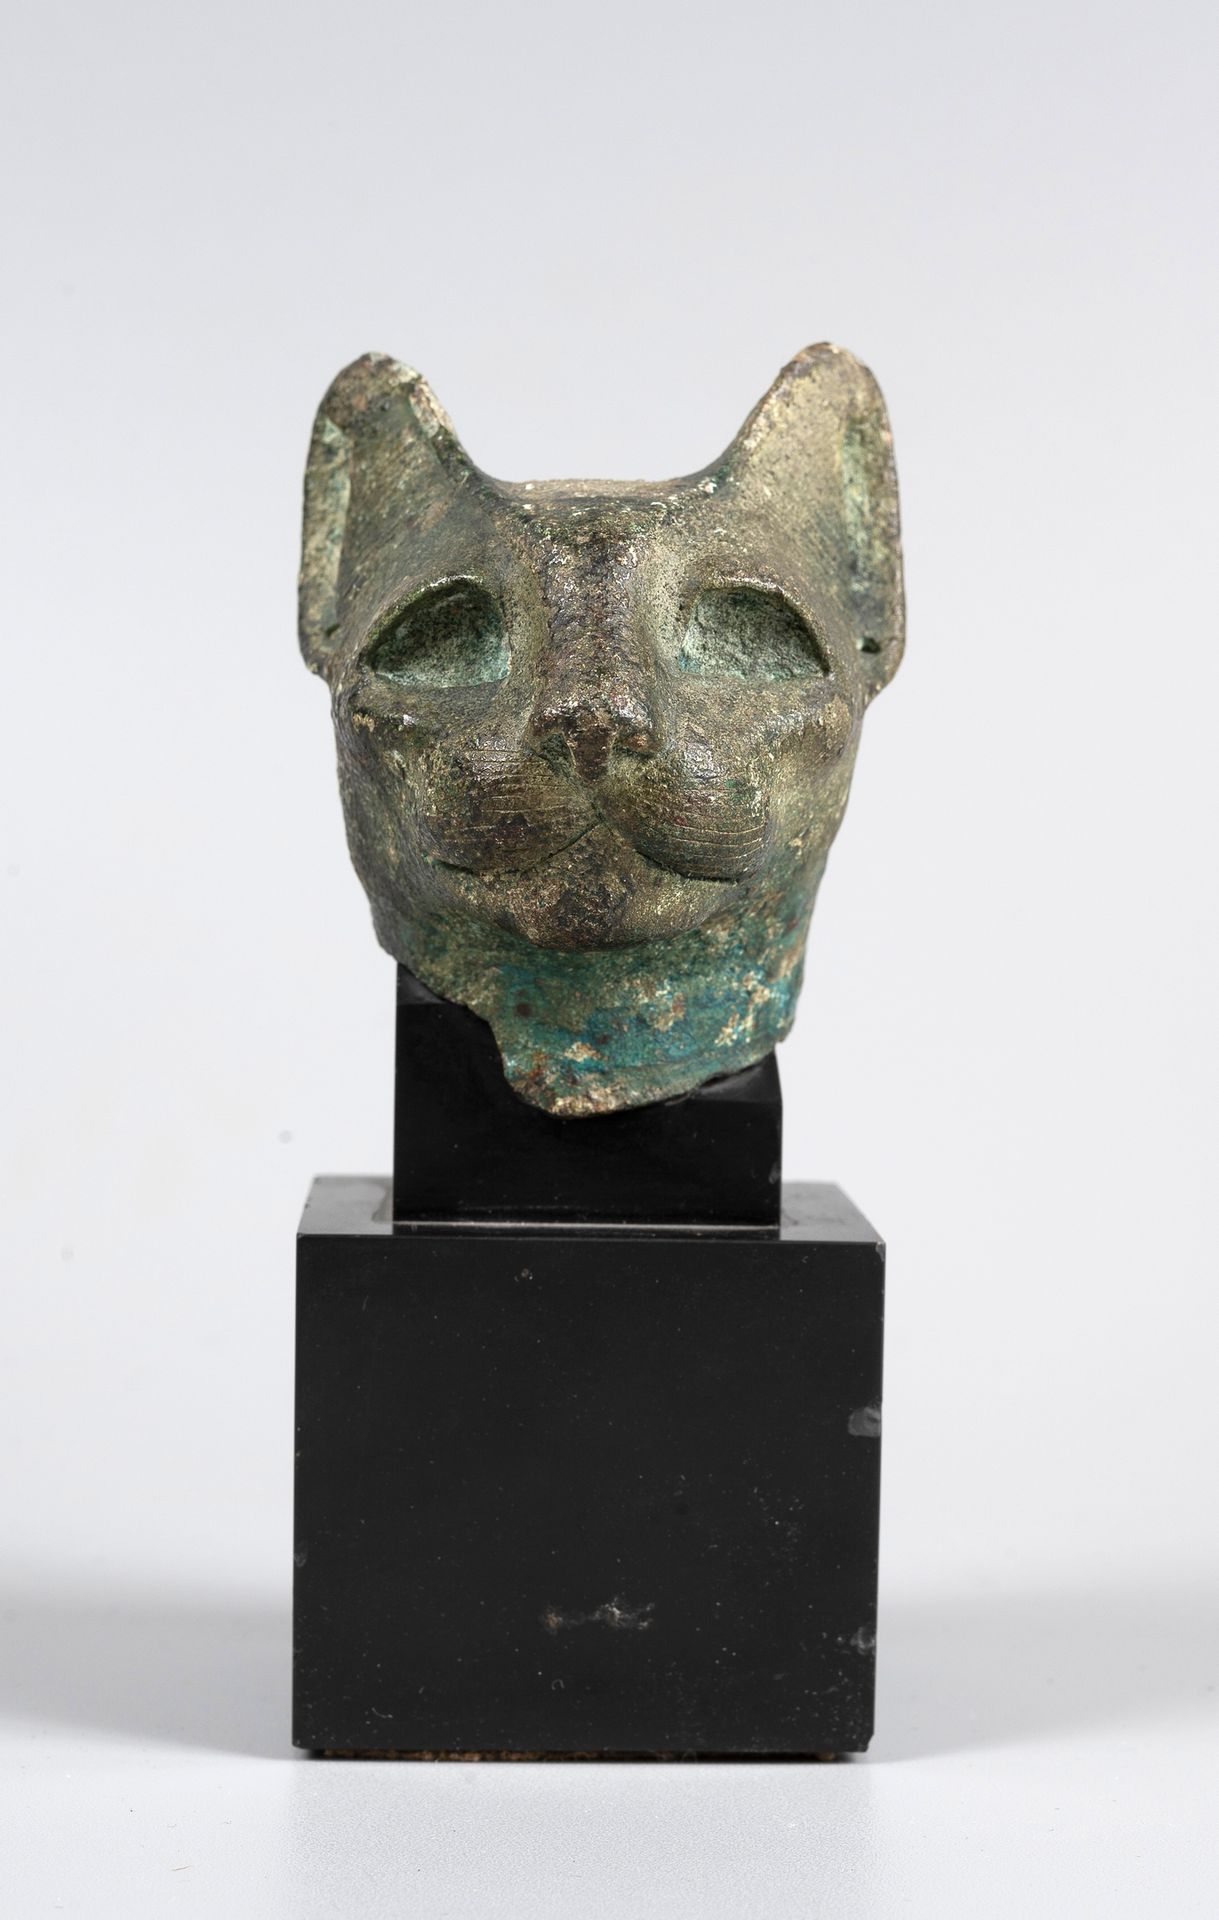 Null Kopf der Bastet aus Bronze

Ägypten, Spät- oder Ptolemäerzeit (664-30 v. Ch&hellip;